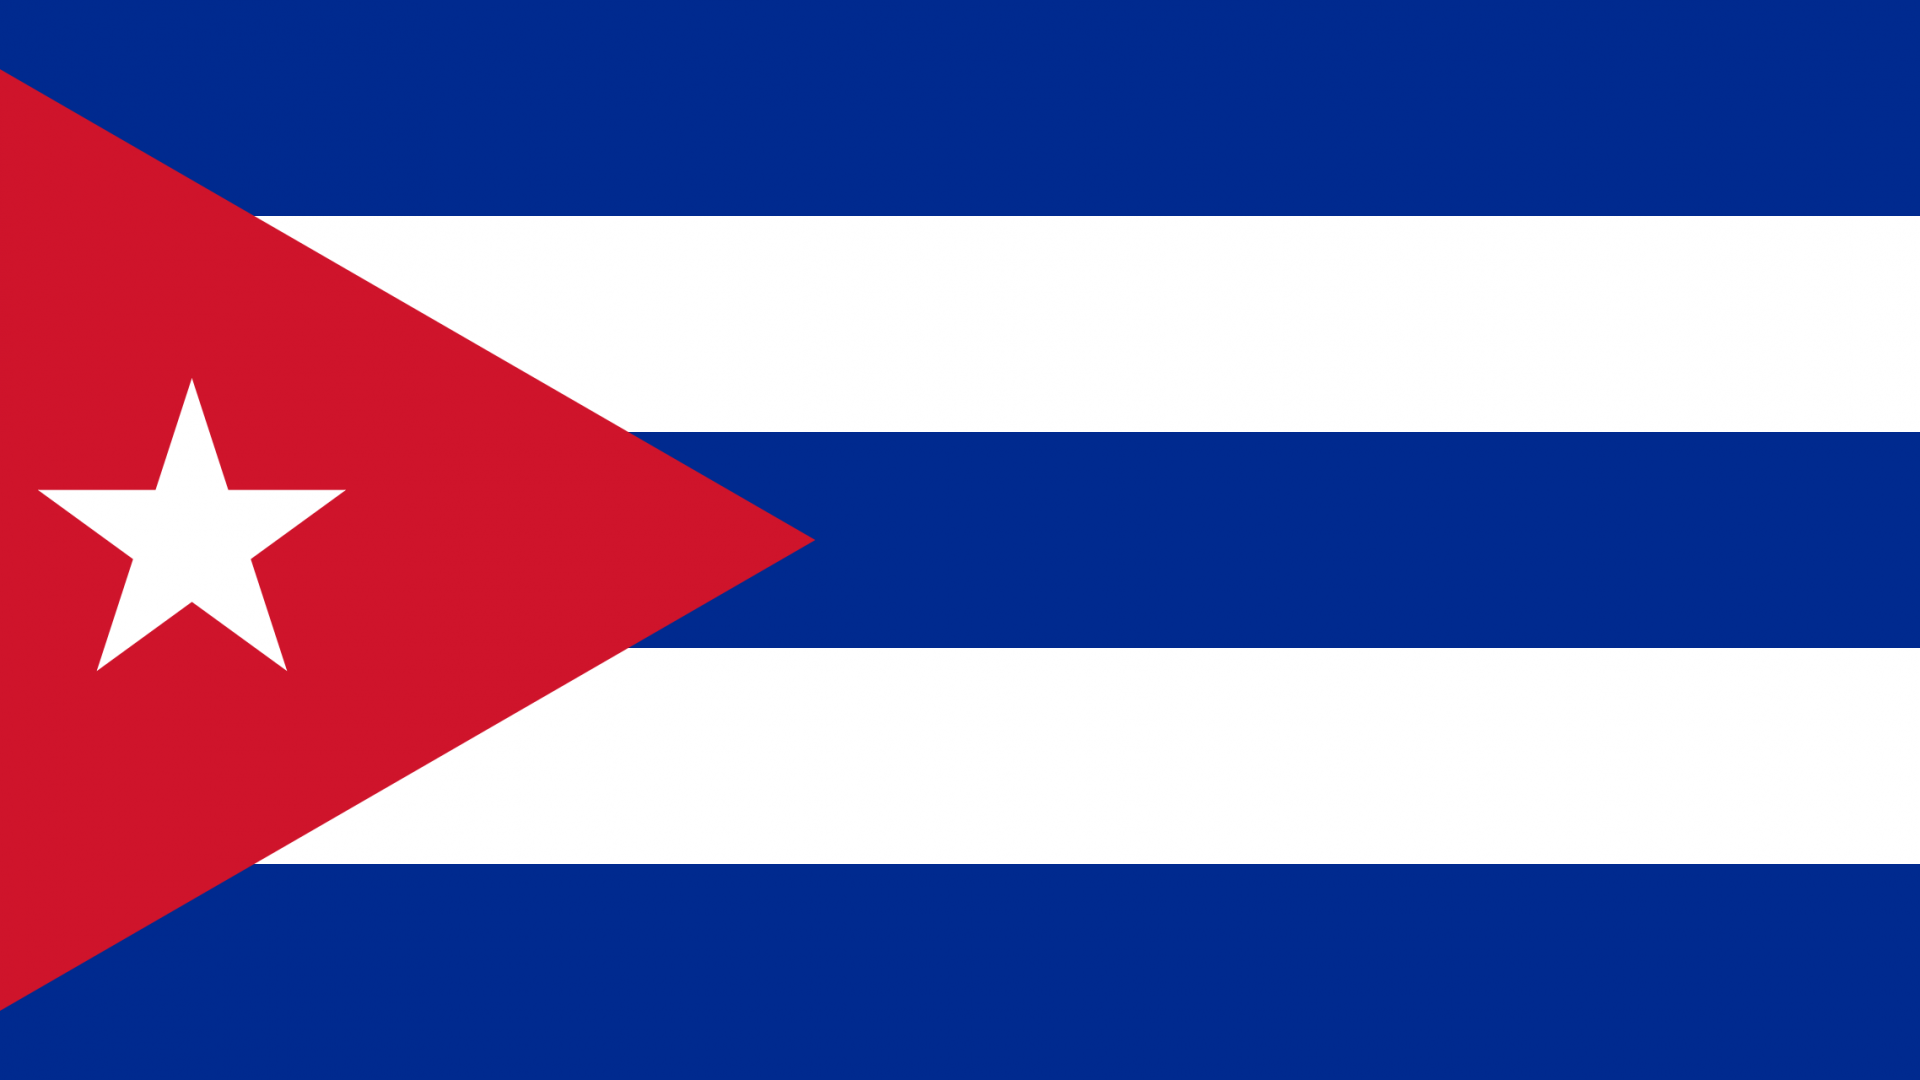 Cuba Flag Wallpaper, High Definition, High Quality, Widescreen